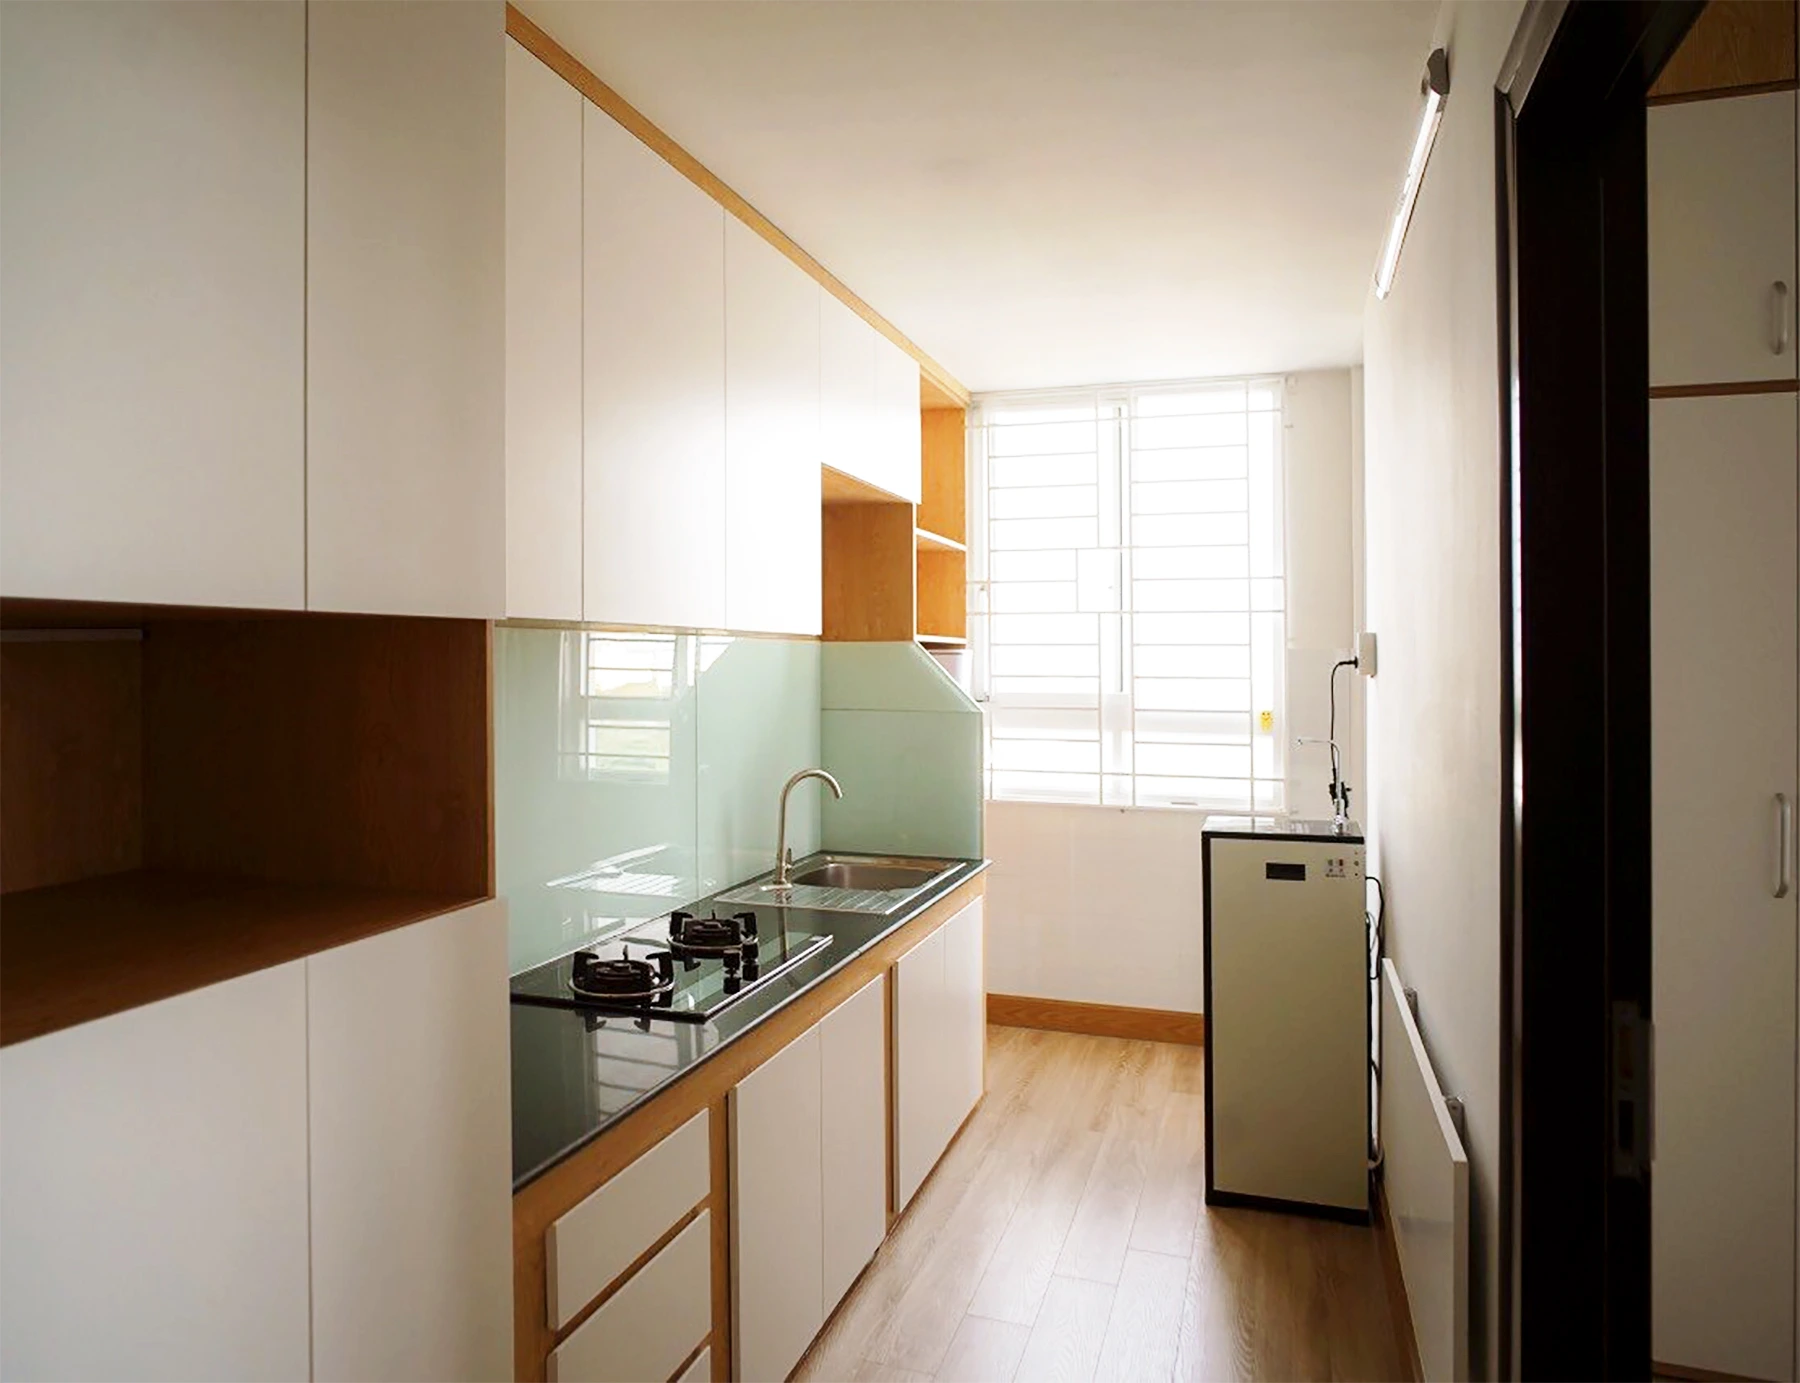 Hoàn thiện nội thất phòng bếp tại căn hộ chung cư Sơn Kỳ 2 quận Tân Phú phong cách Hiện đại Modern